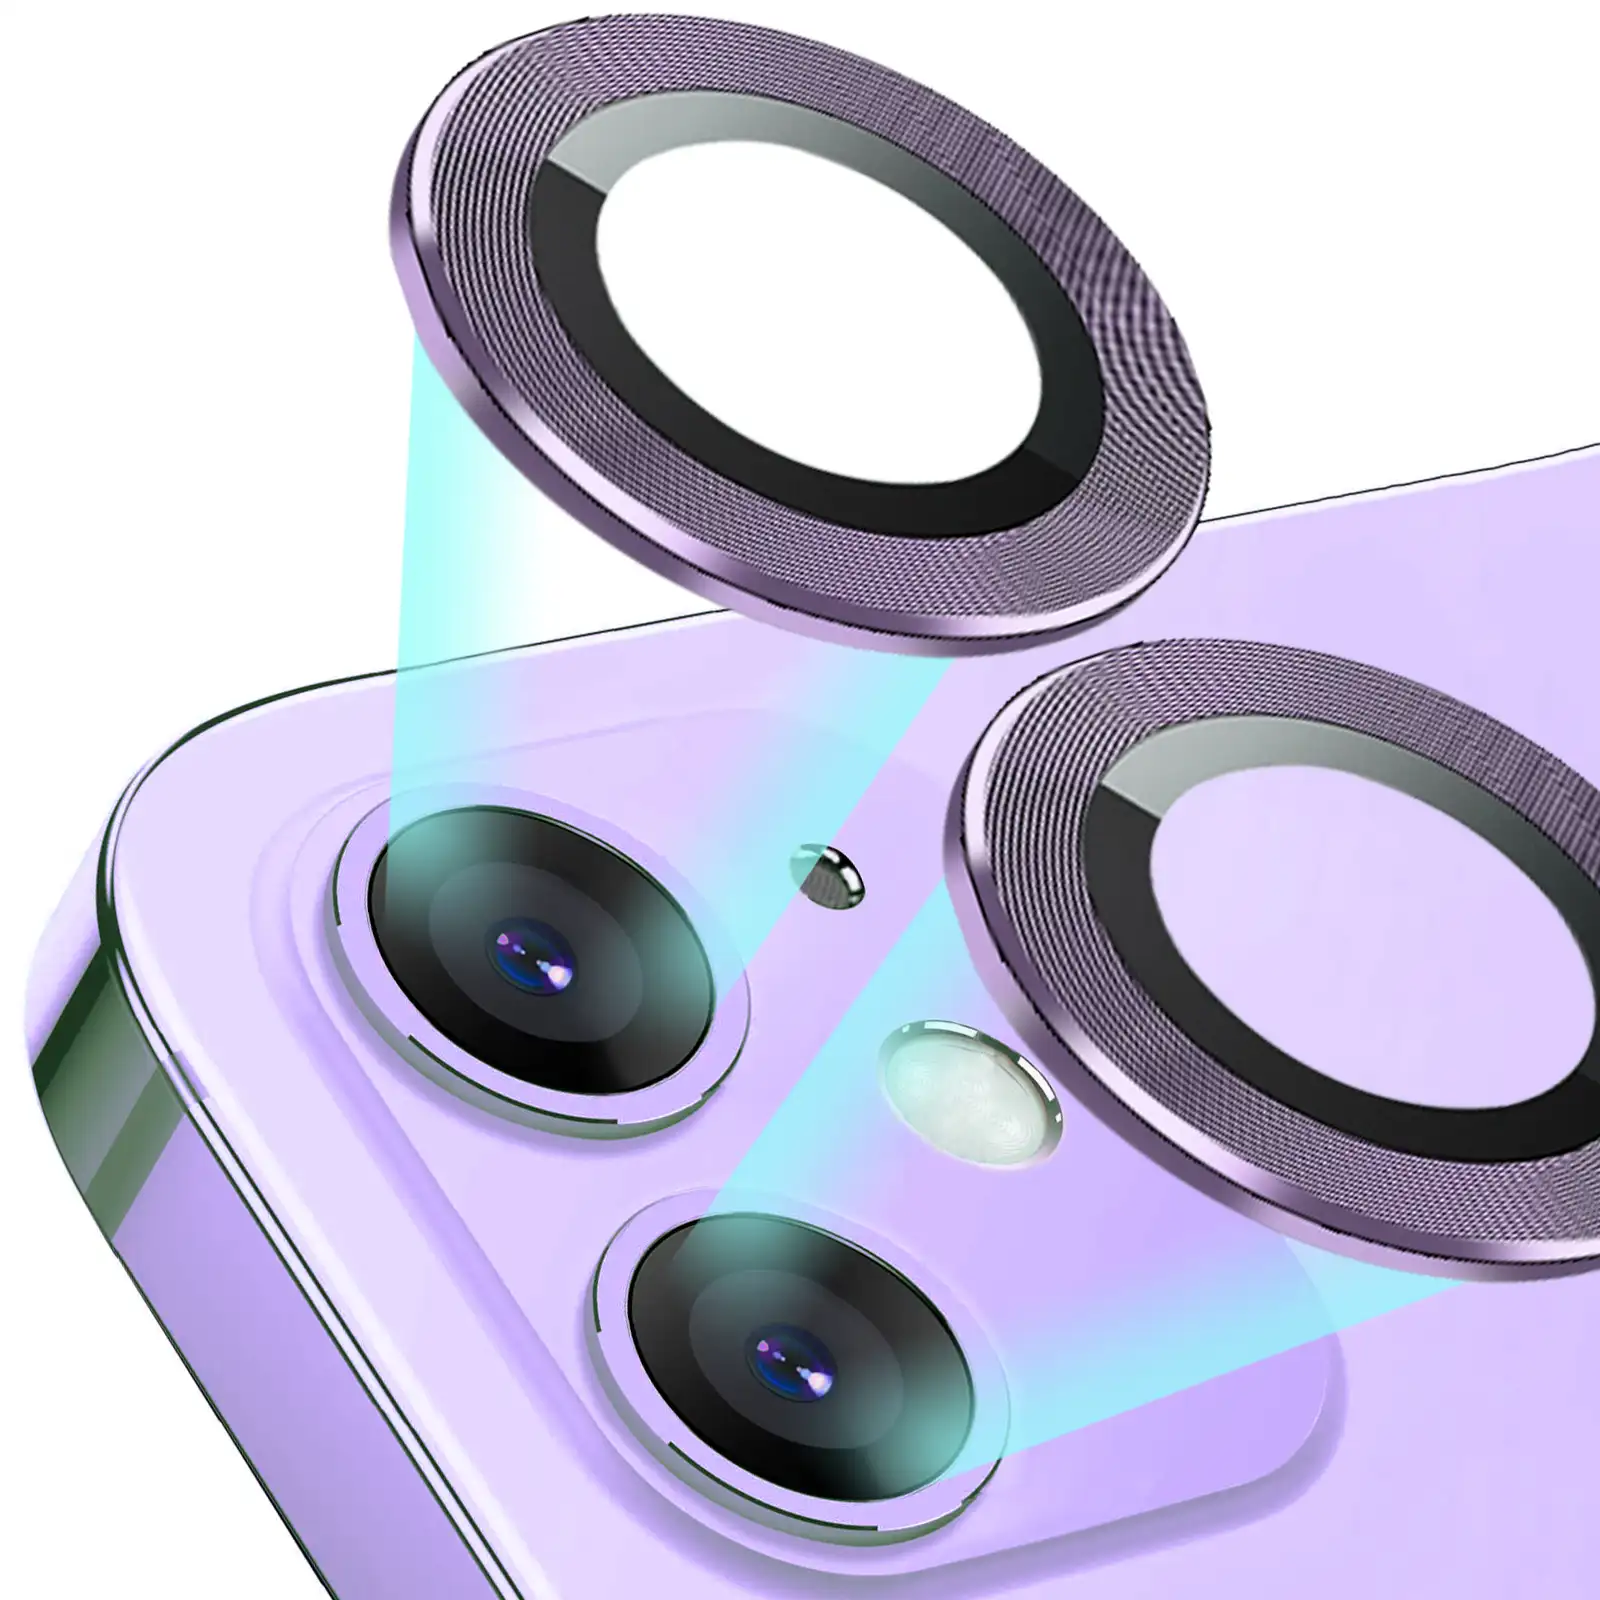 Cerchio ad alta definizione antigraffio con disegno a filo per Iphone 12 Pro max custodia protettiva per obiettivo in metallo